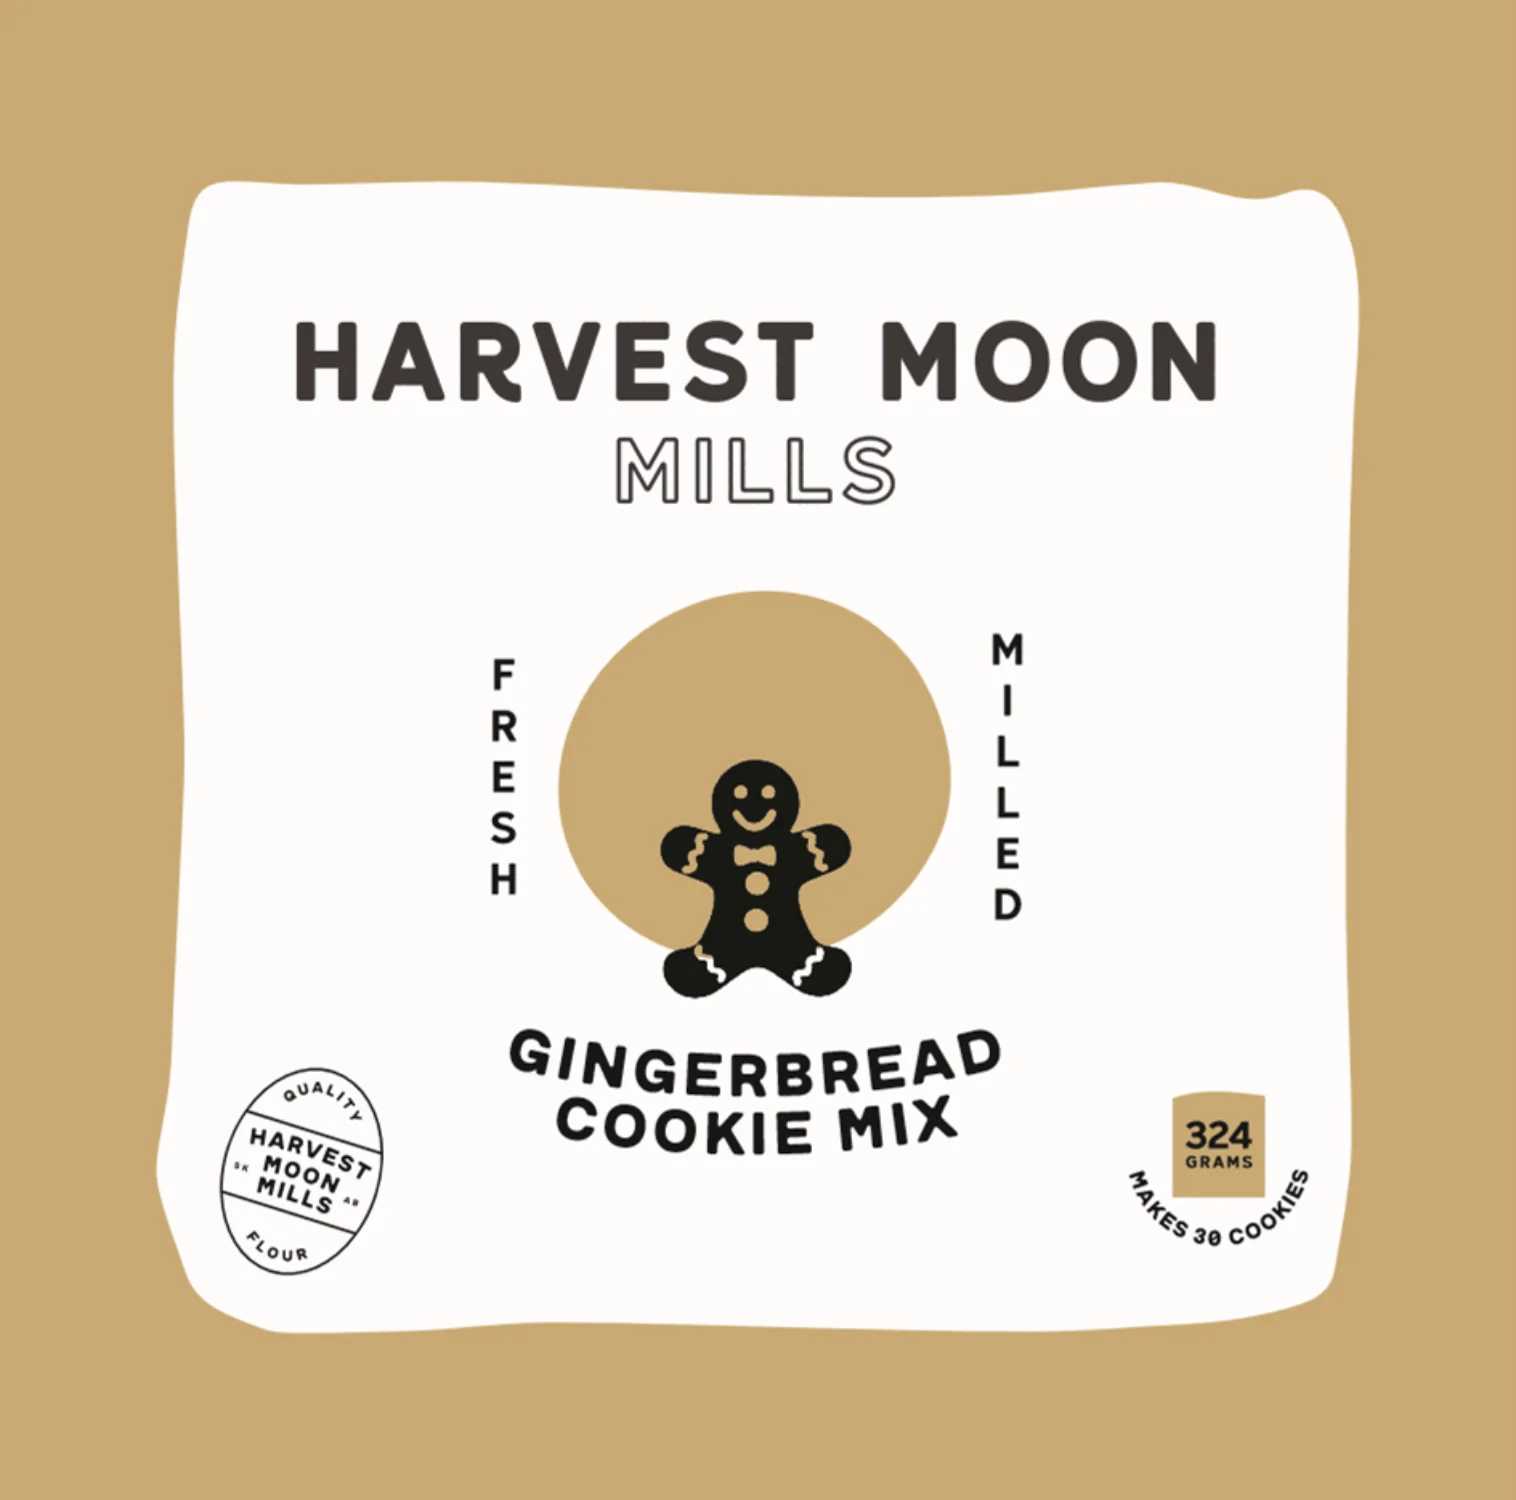 Gingerbread Cookie Mix - 324 grams - Oonnie - Harvest Moon Mills